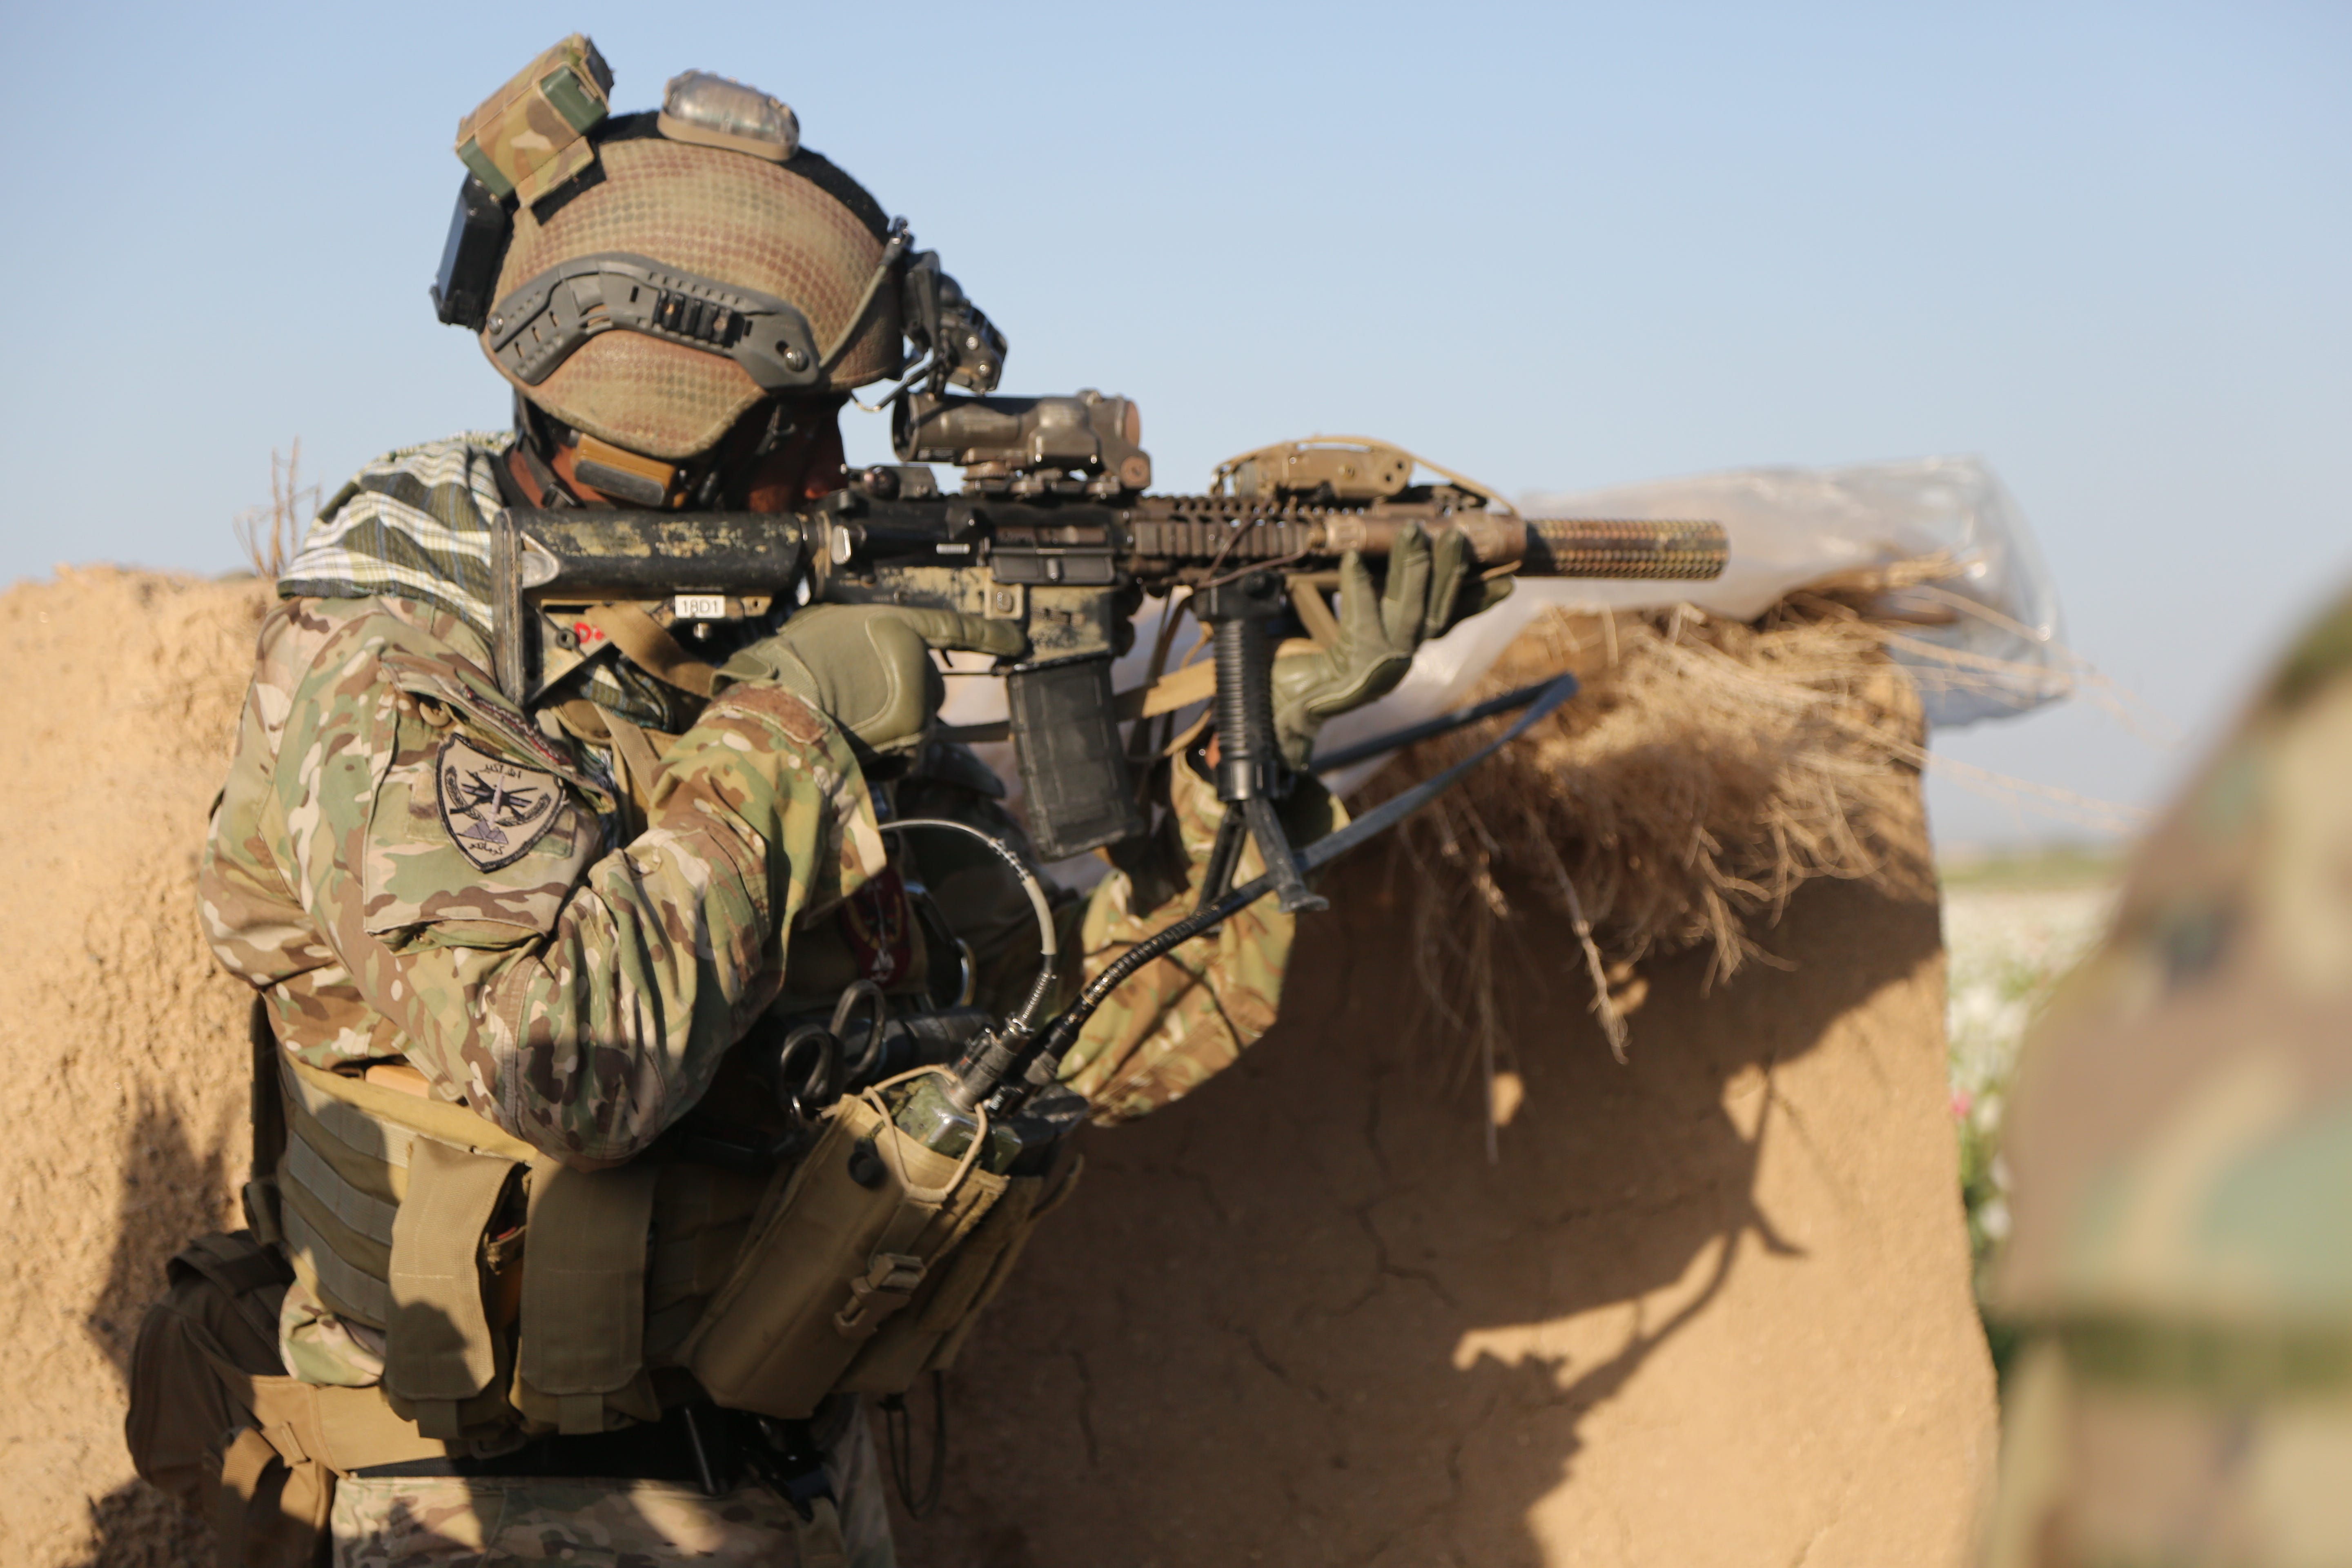 Ein Soldat der US Army Special Forces, der der Combined Joint Special Operations Task Force-Afghanistan zugeteilt ist, sorgt während einer Beratungsmission in Afghanistan am 10. April 2014 für Sicherheit.